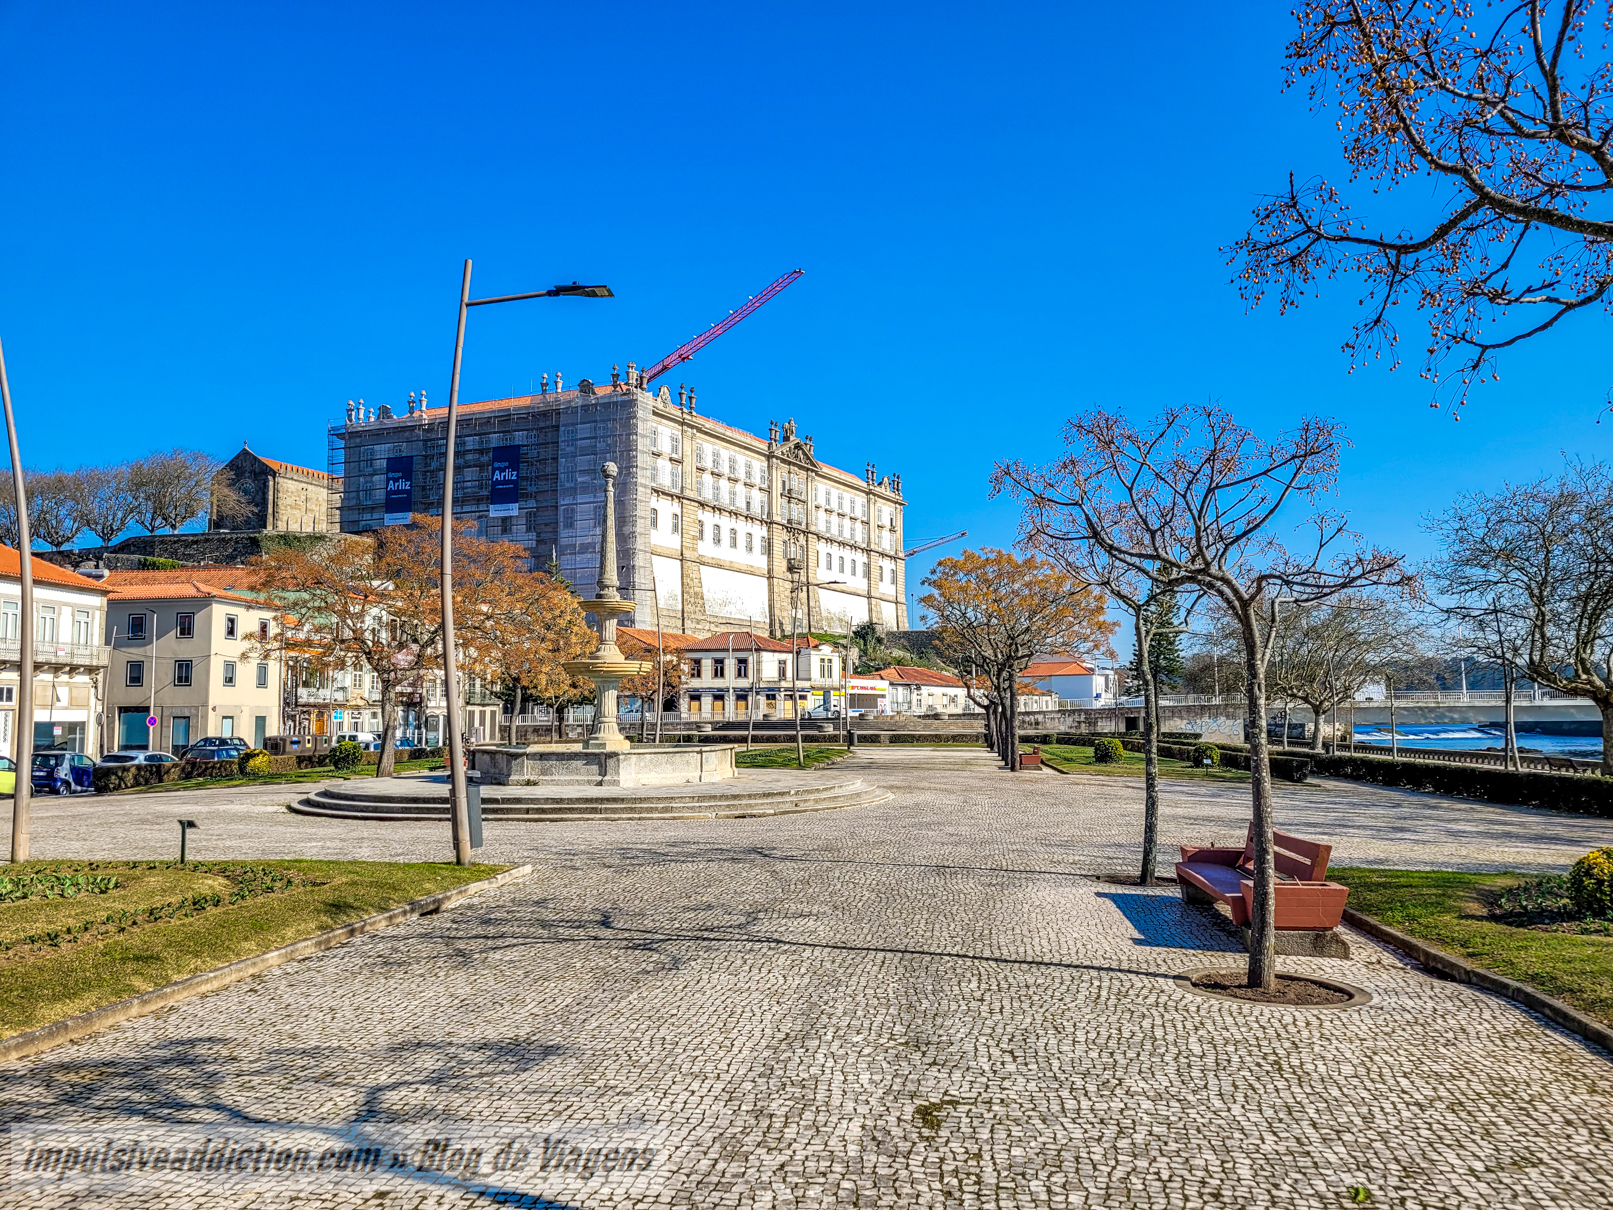 Republic Square to visit in Vila do Conde